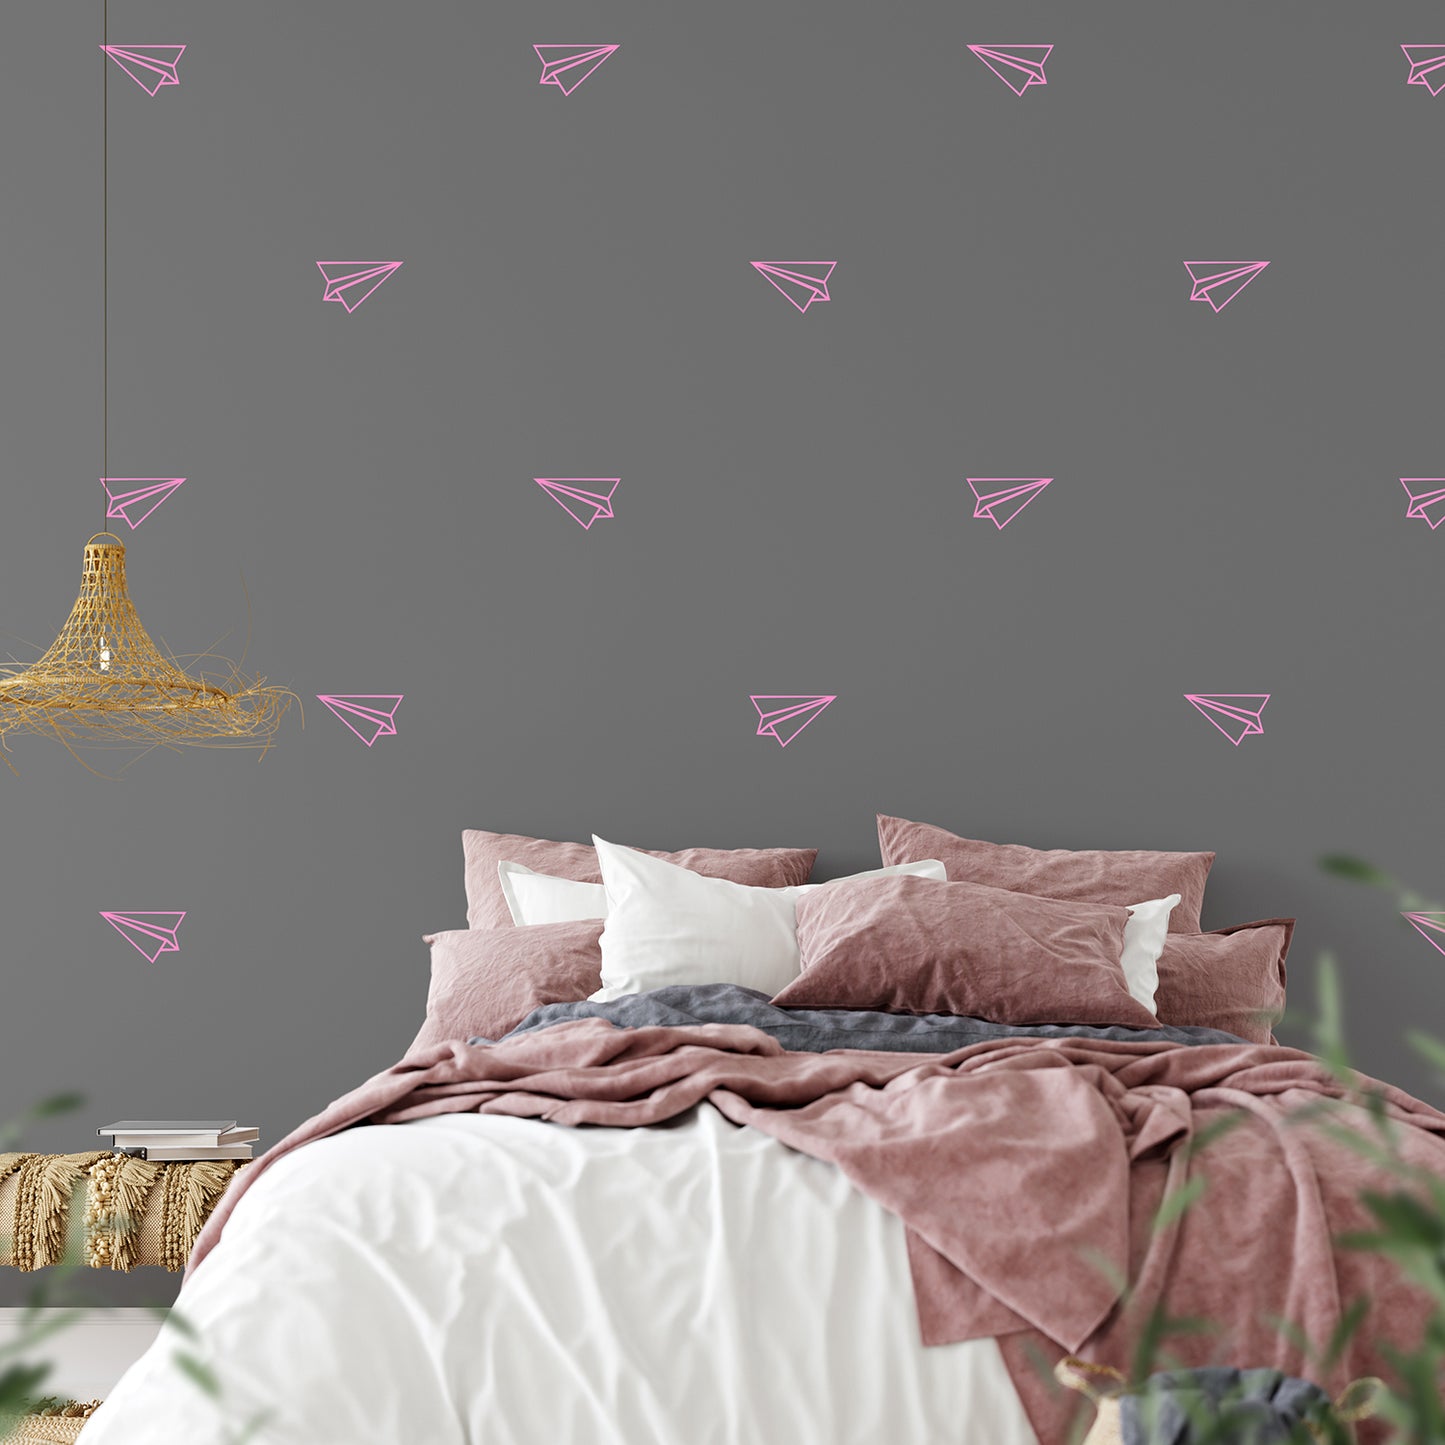 Paper aeroplanes | Wall pattern